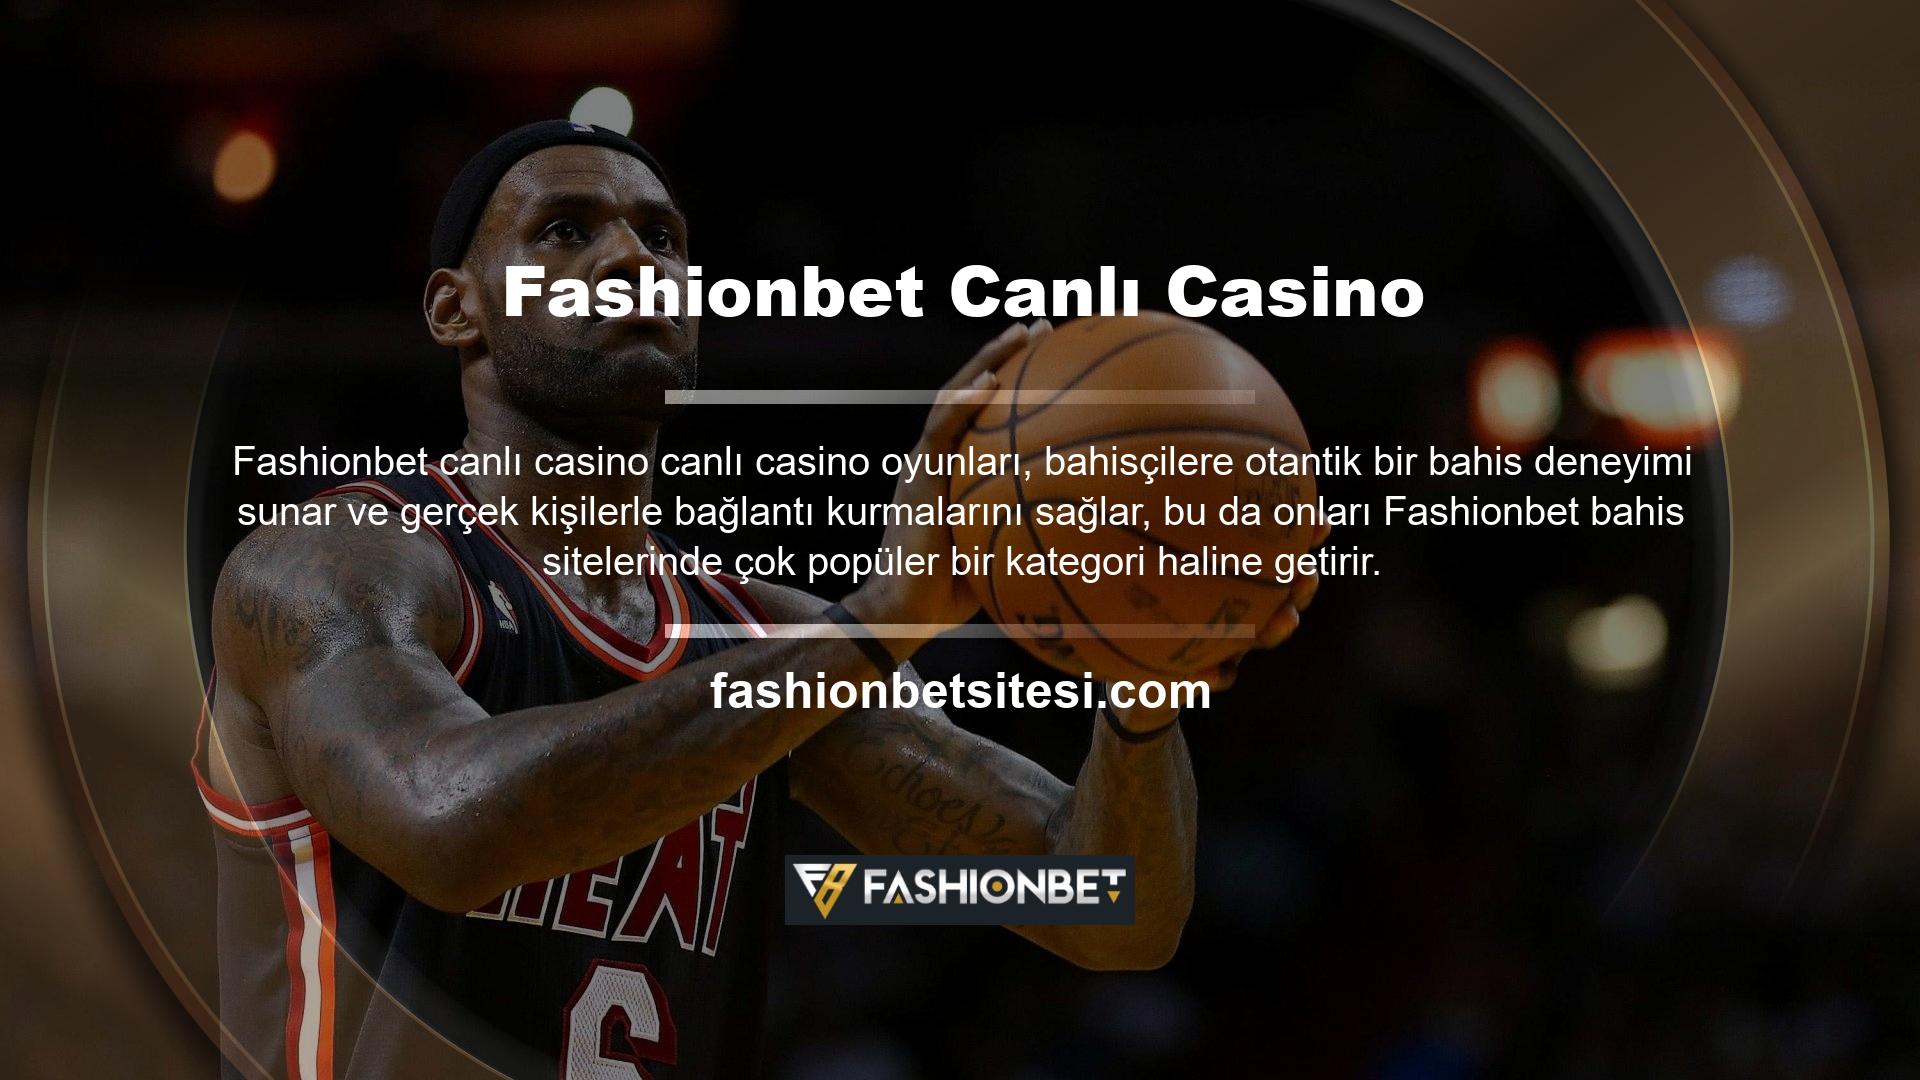 Sitenin Fashionbet Canlı Casino bölümü, kullanıcılarına kaliteli ve hızlı hizmet sunmaktadır